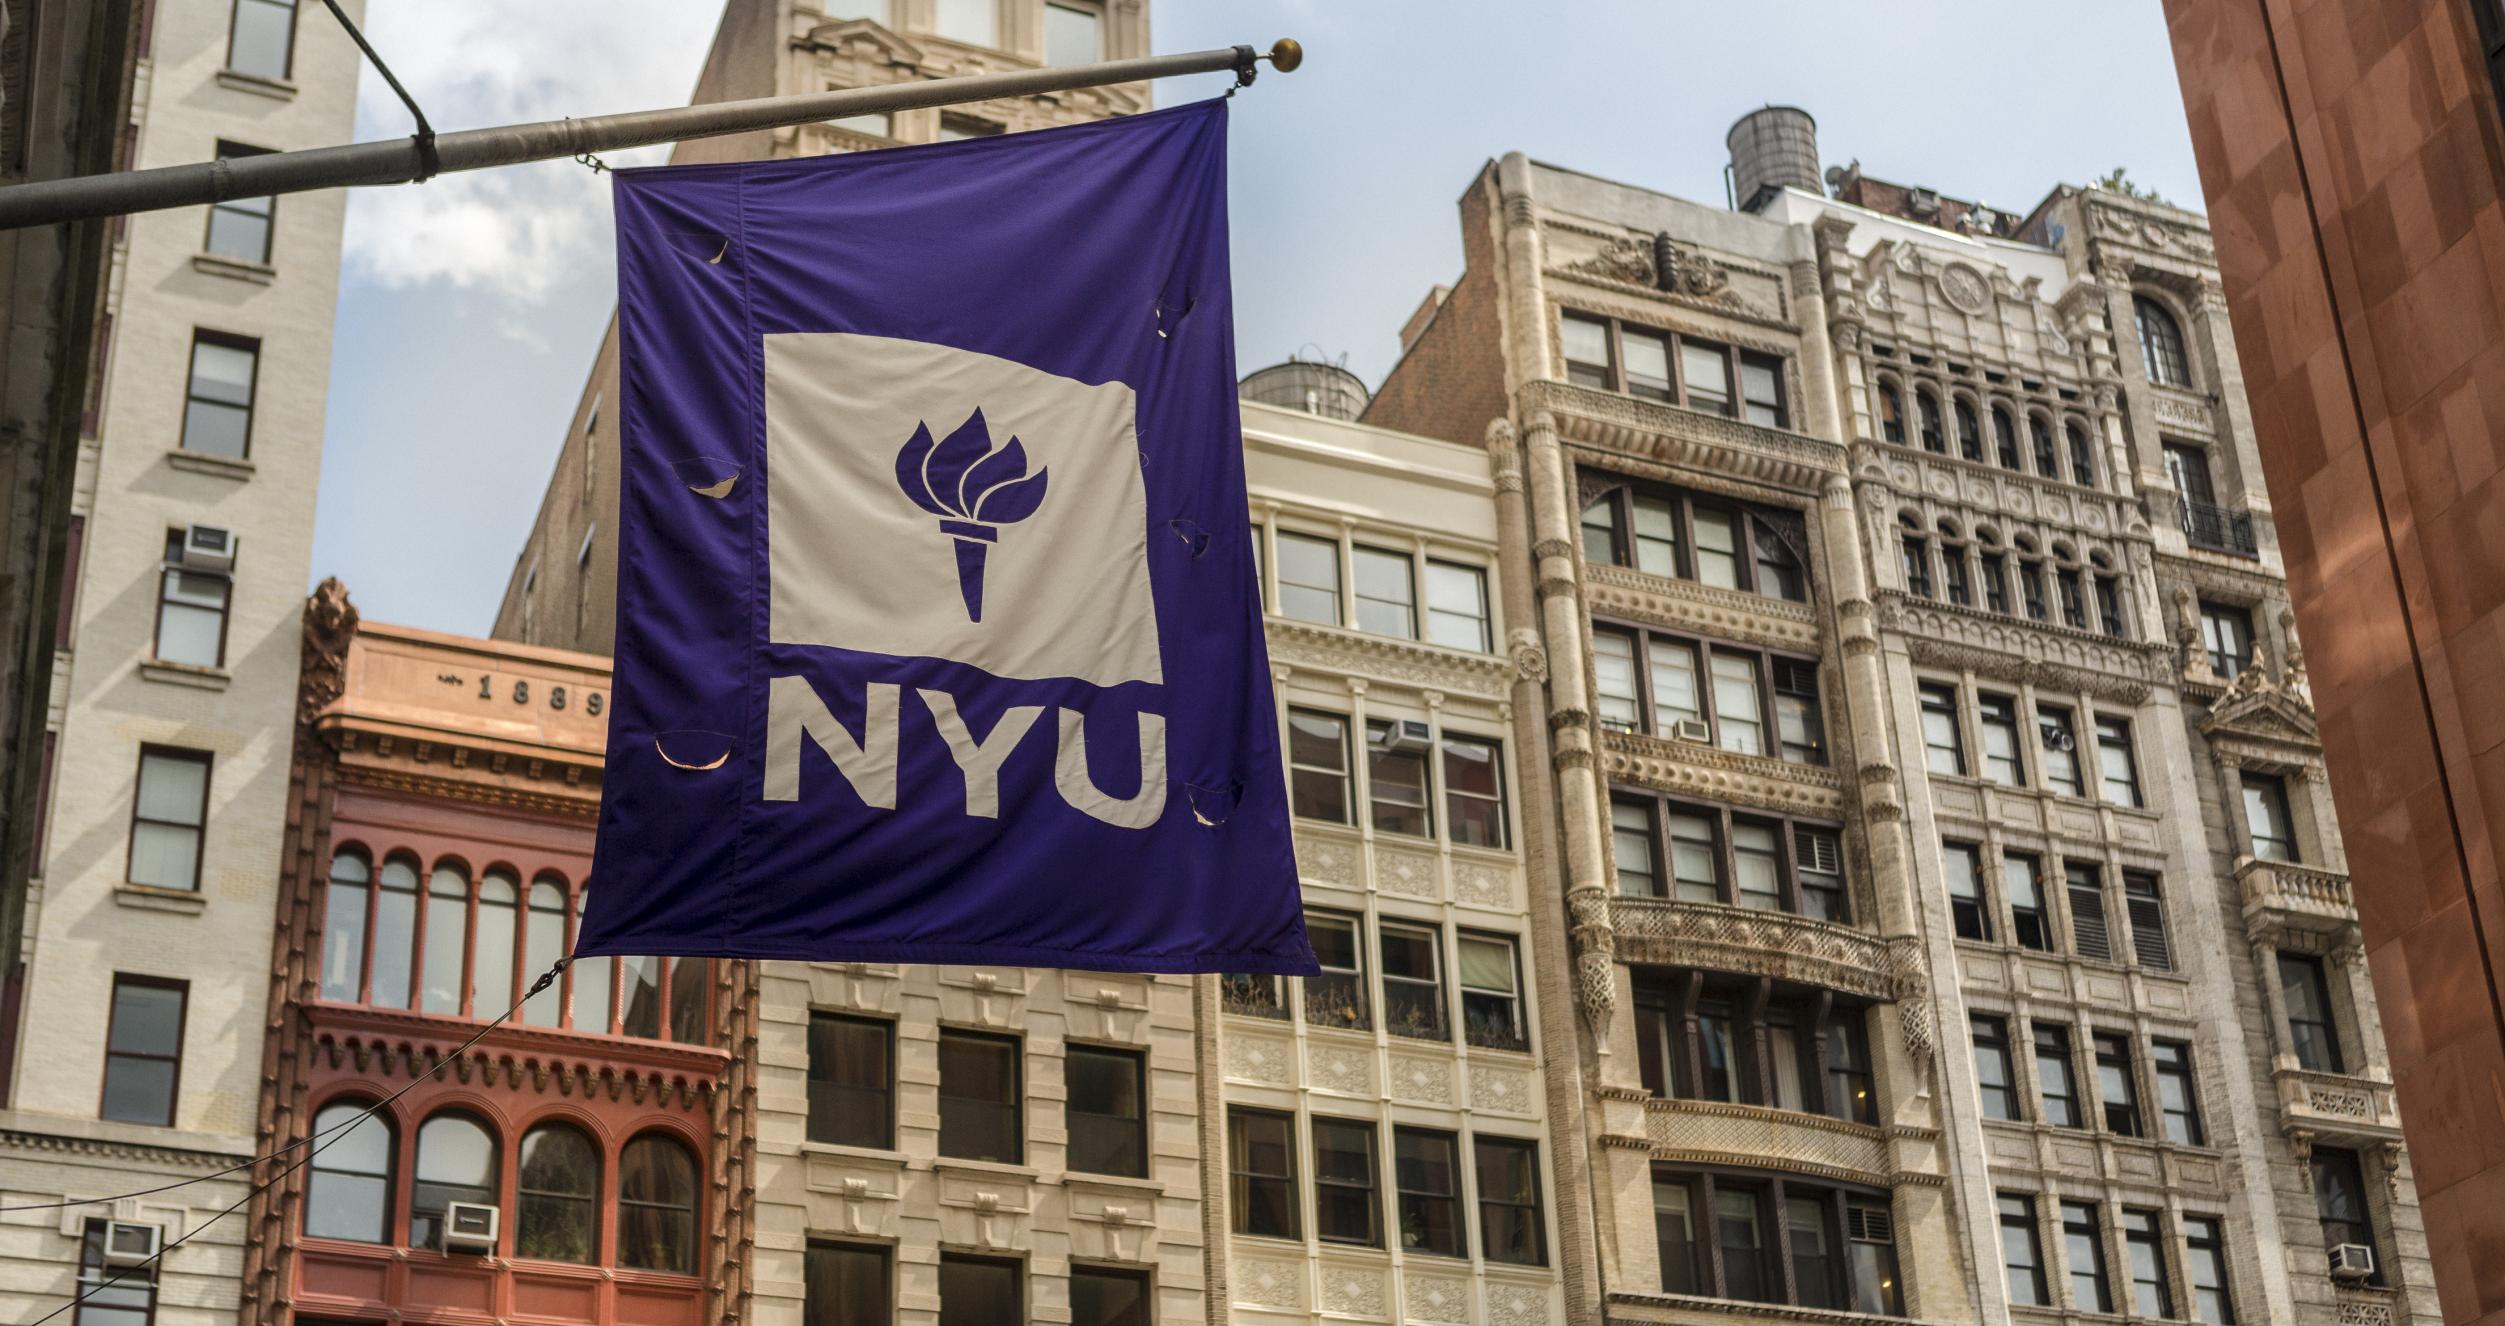 NYU flag against cityscape